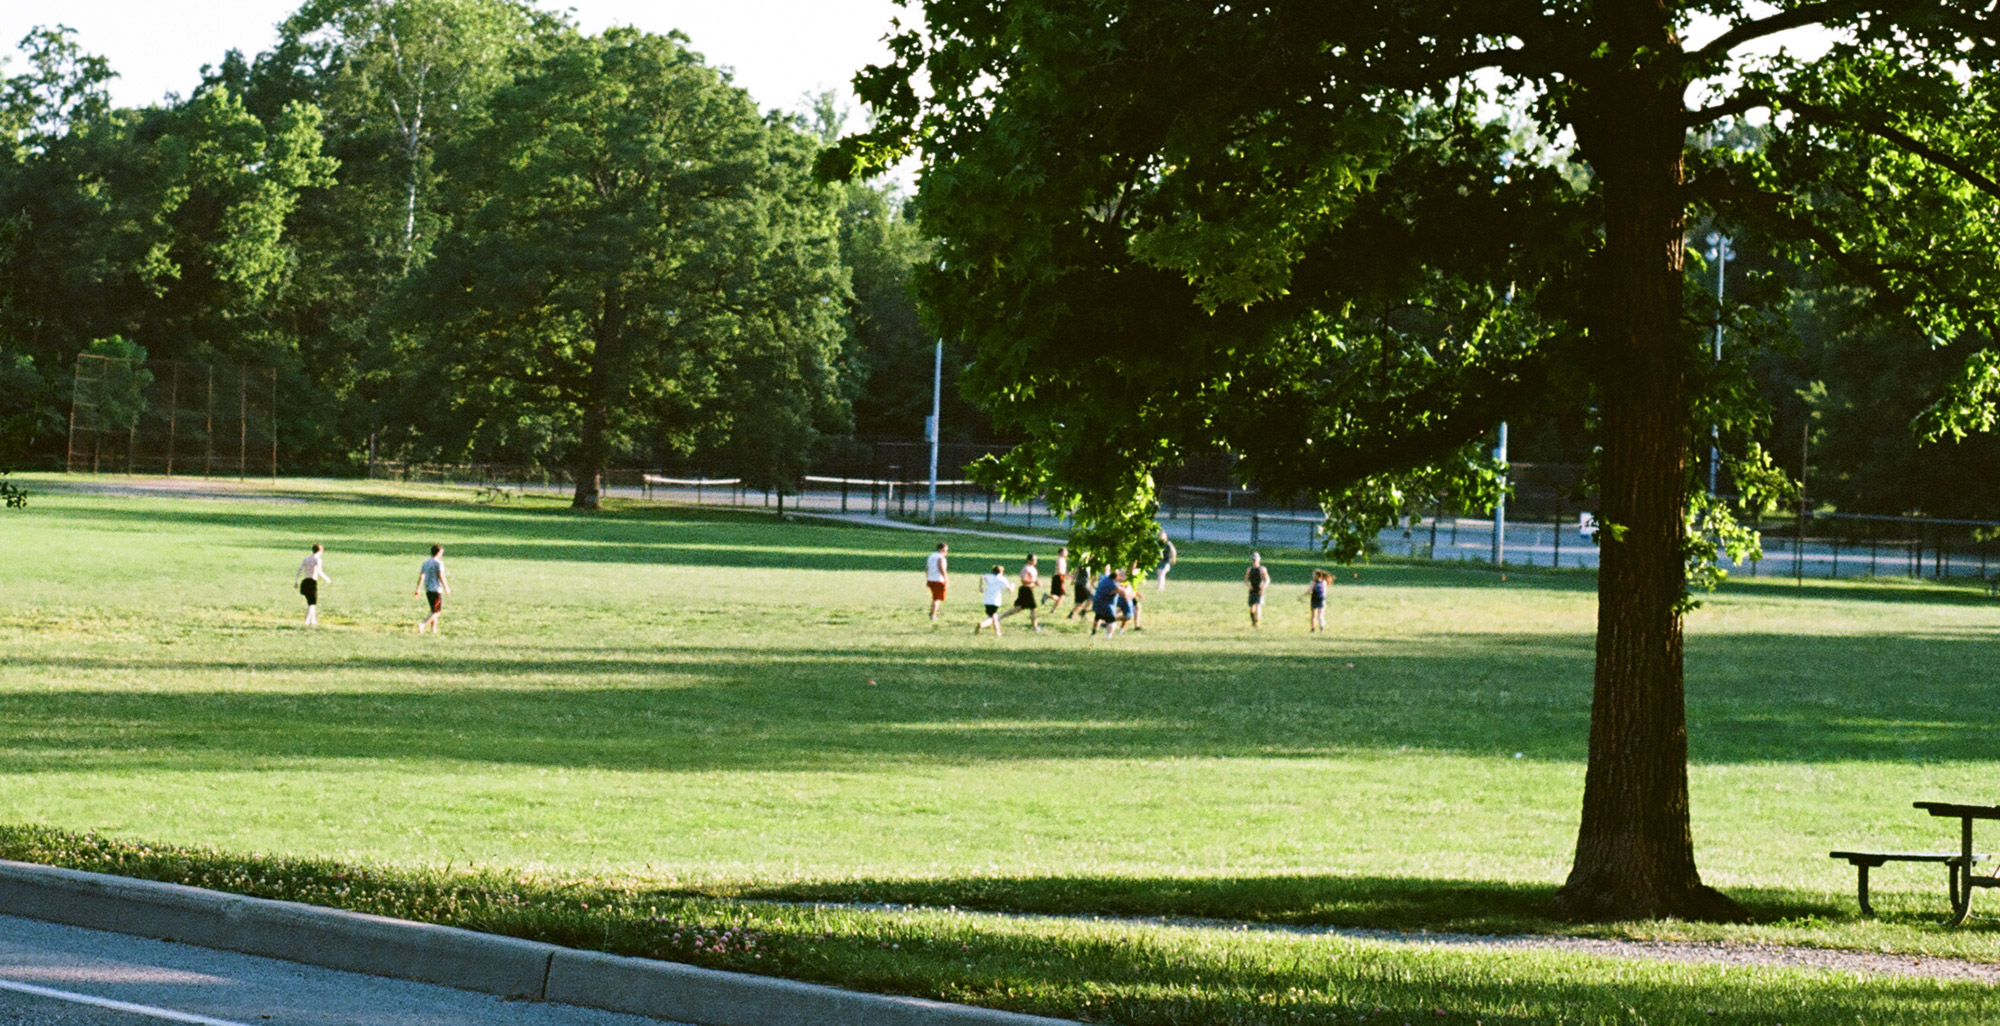 Soccer game at Ellenberger Park